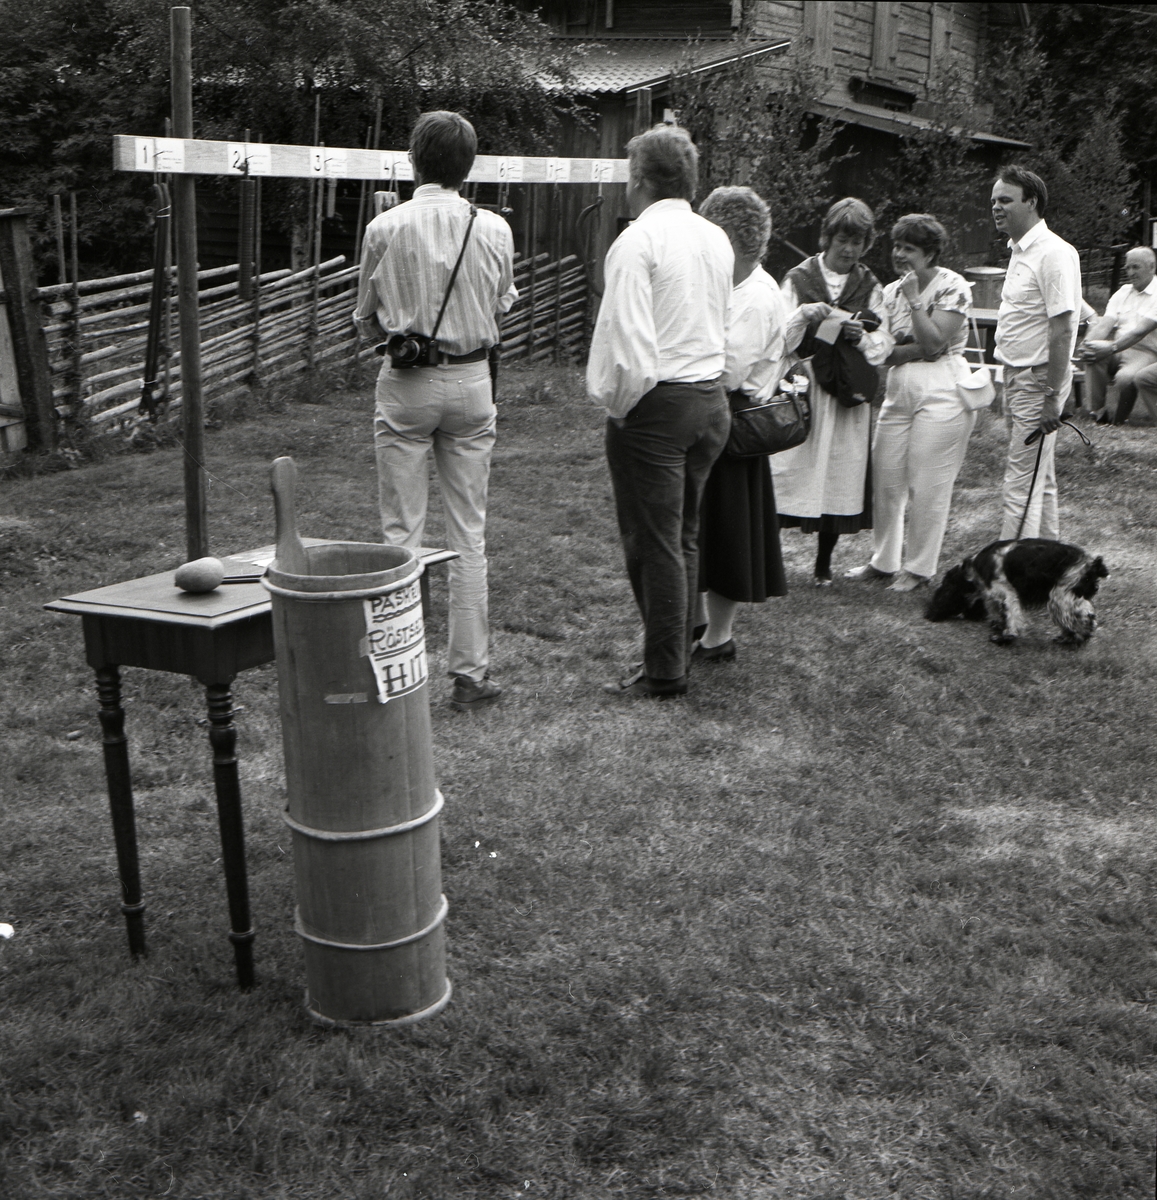 Folksamling studerar numrerade föremål som hänger från en planka under Rengsjöfesten, 14 juli 1985.